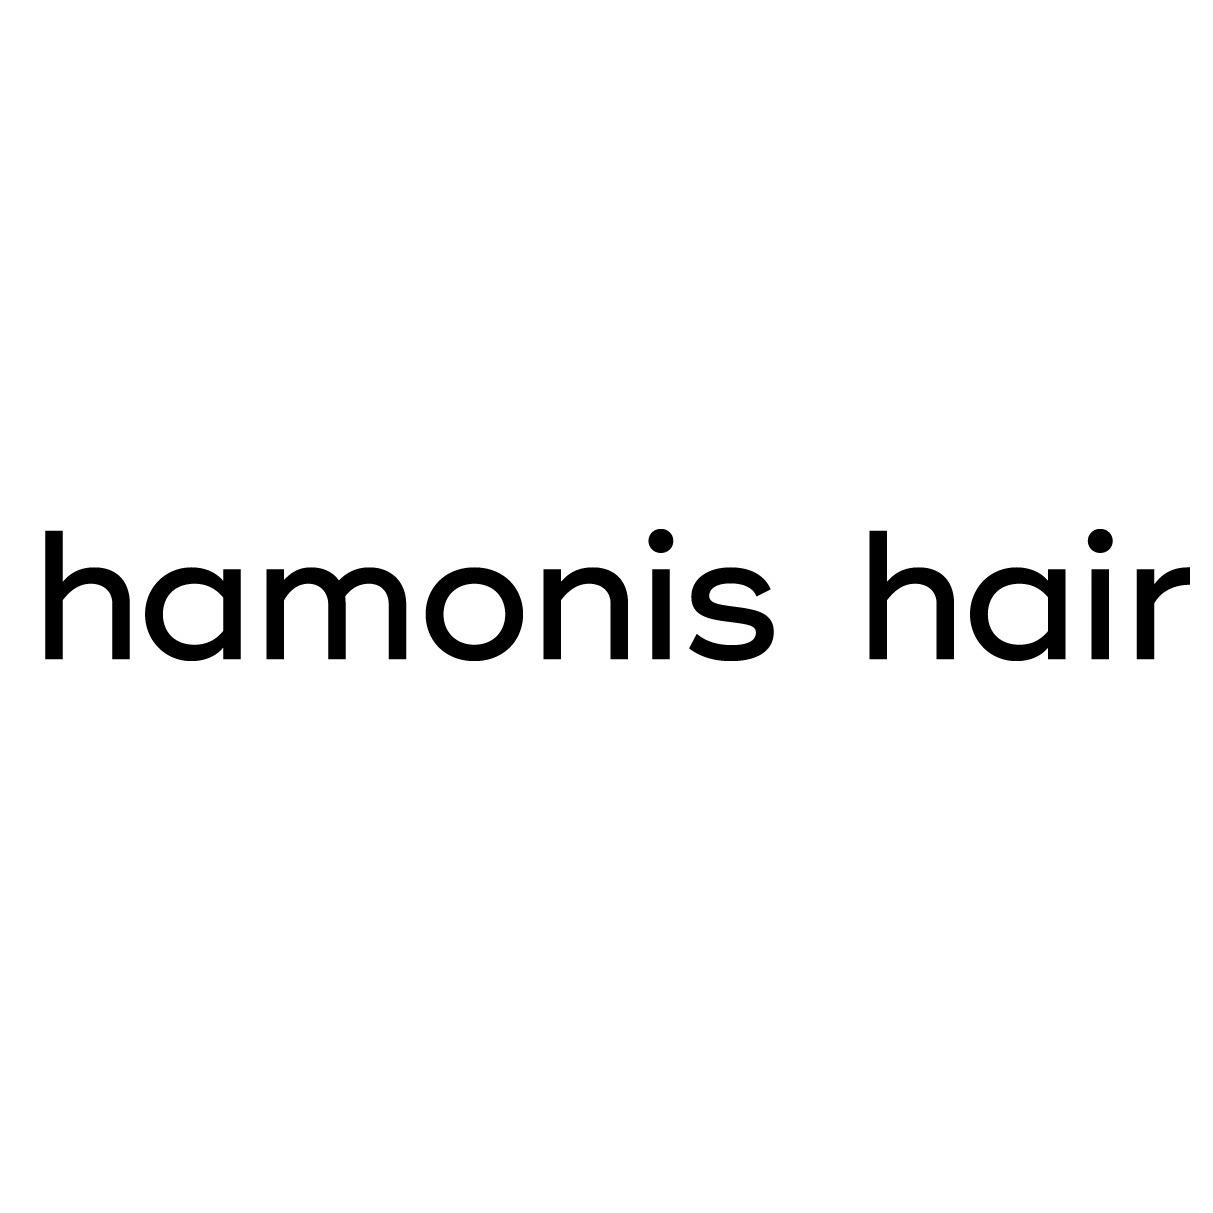 Hamonis hair Logo